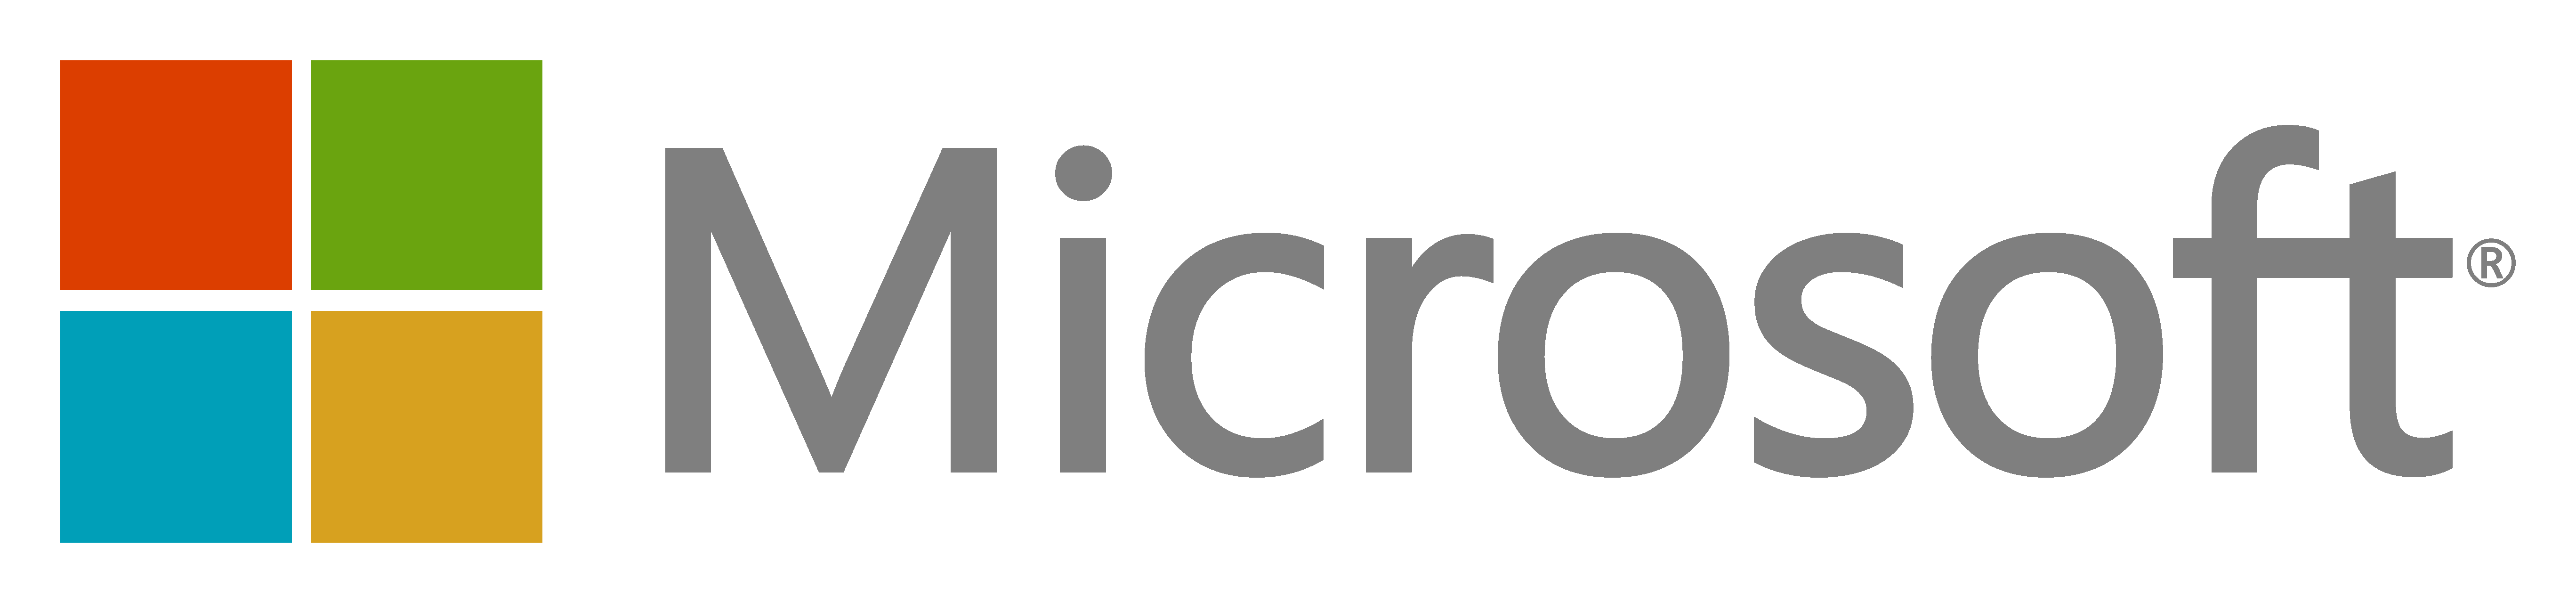 Windows Microsoft logo Télécharger limage PNG Transparente